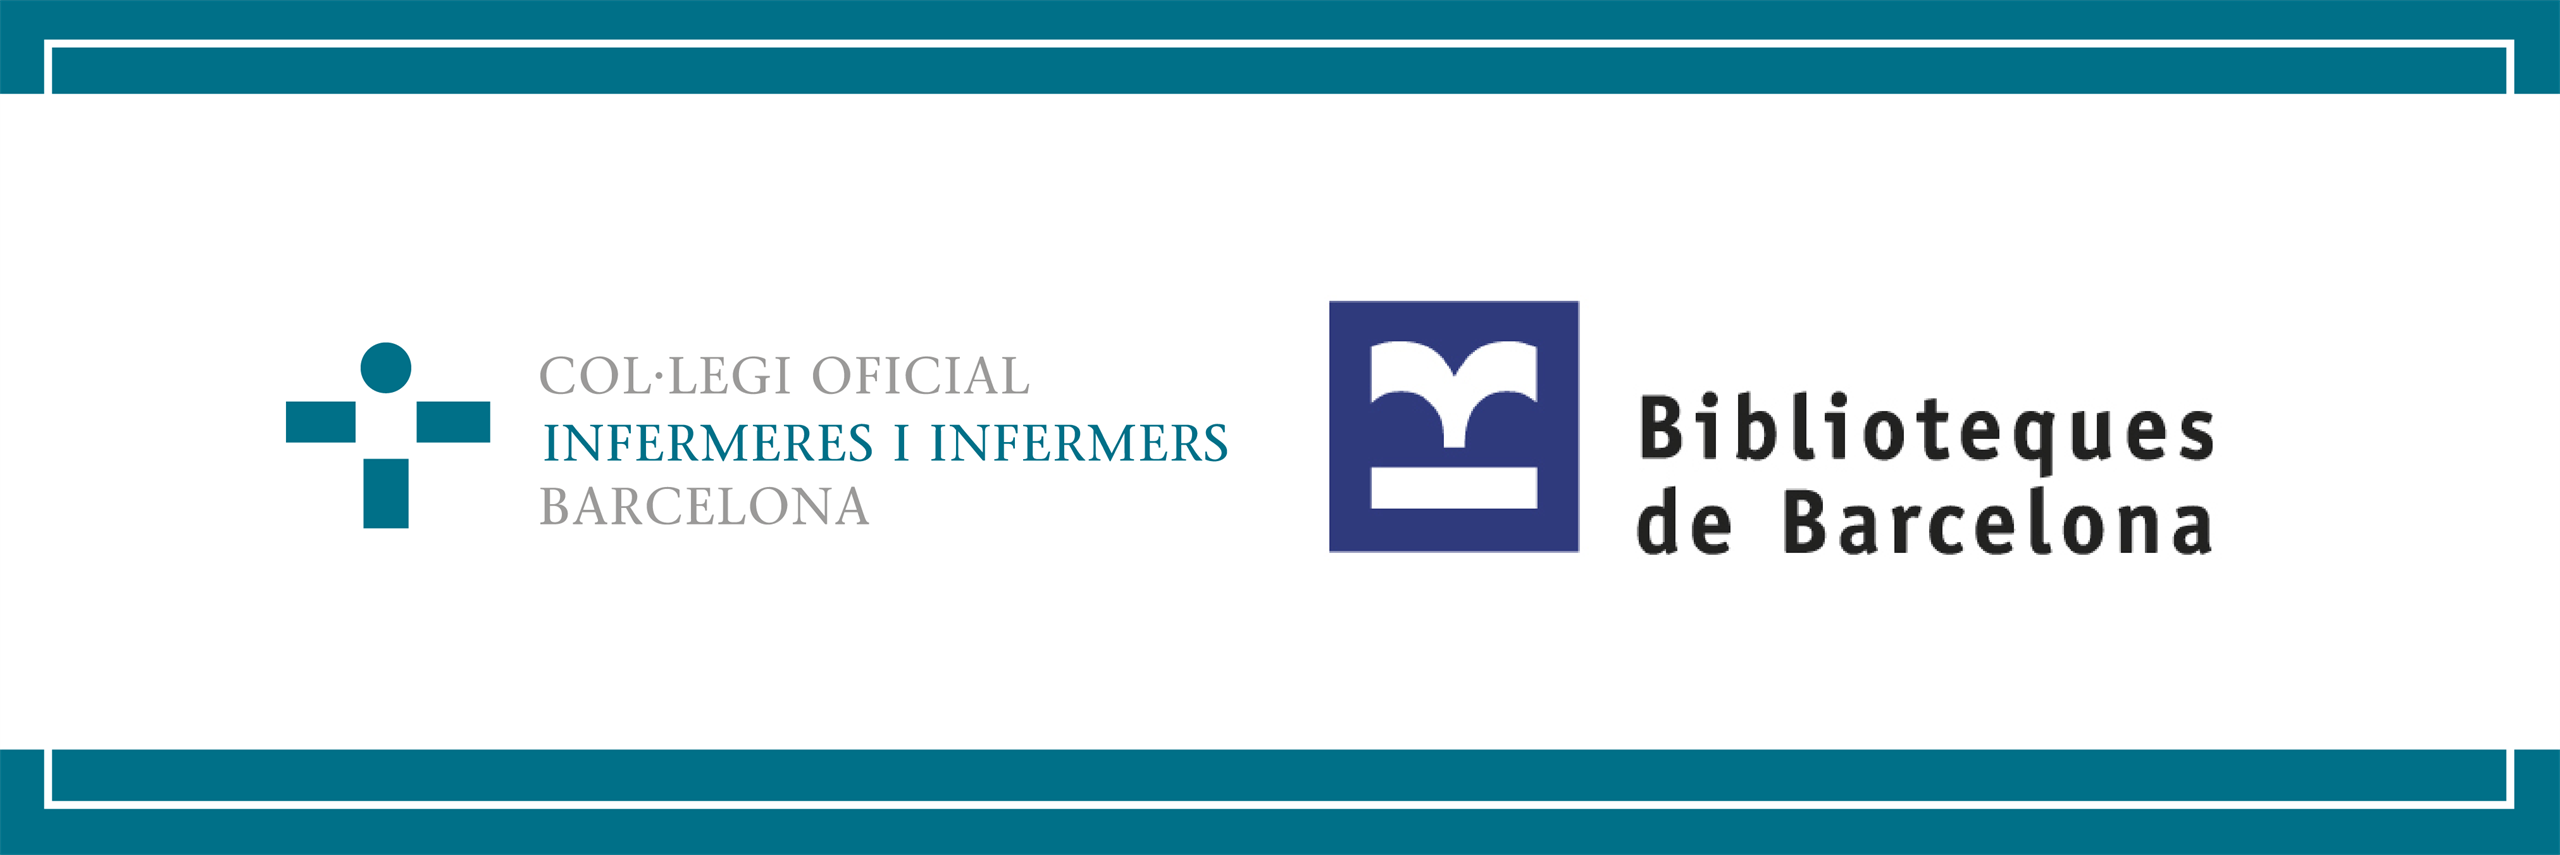 El COIB i el Consorci de Biblioteques de Barcelona signen un conveni de col·laboració